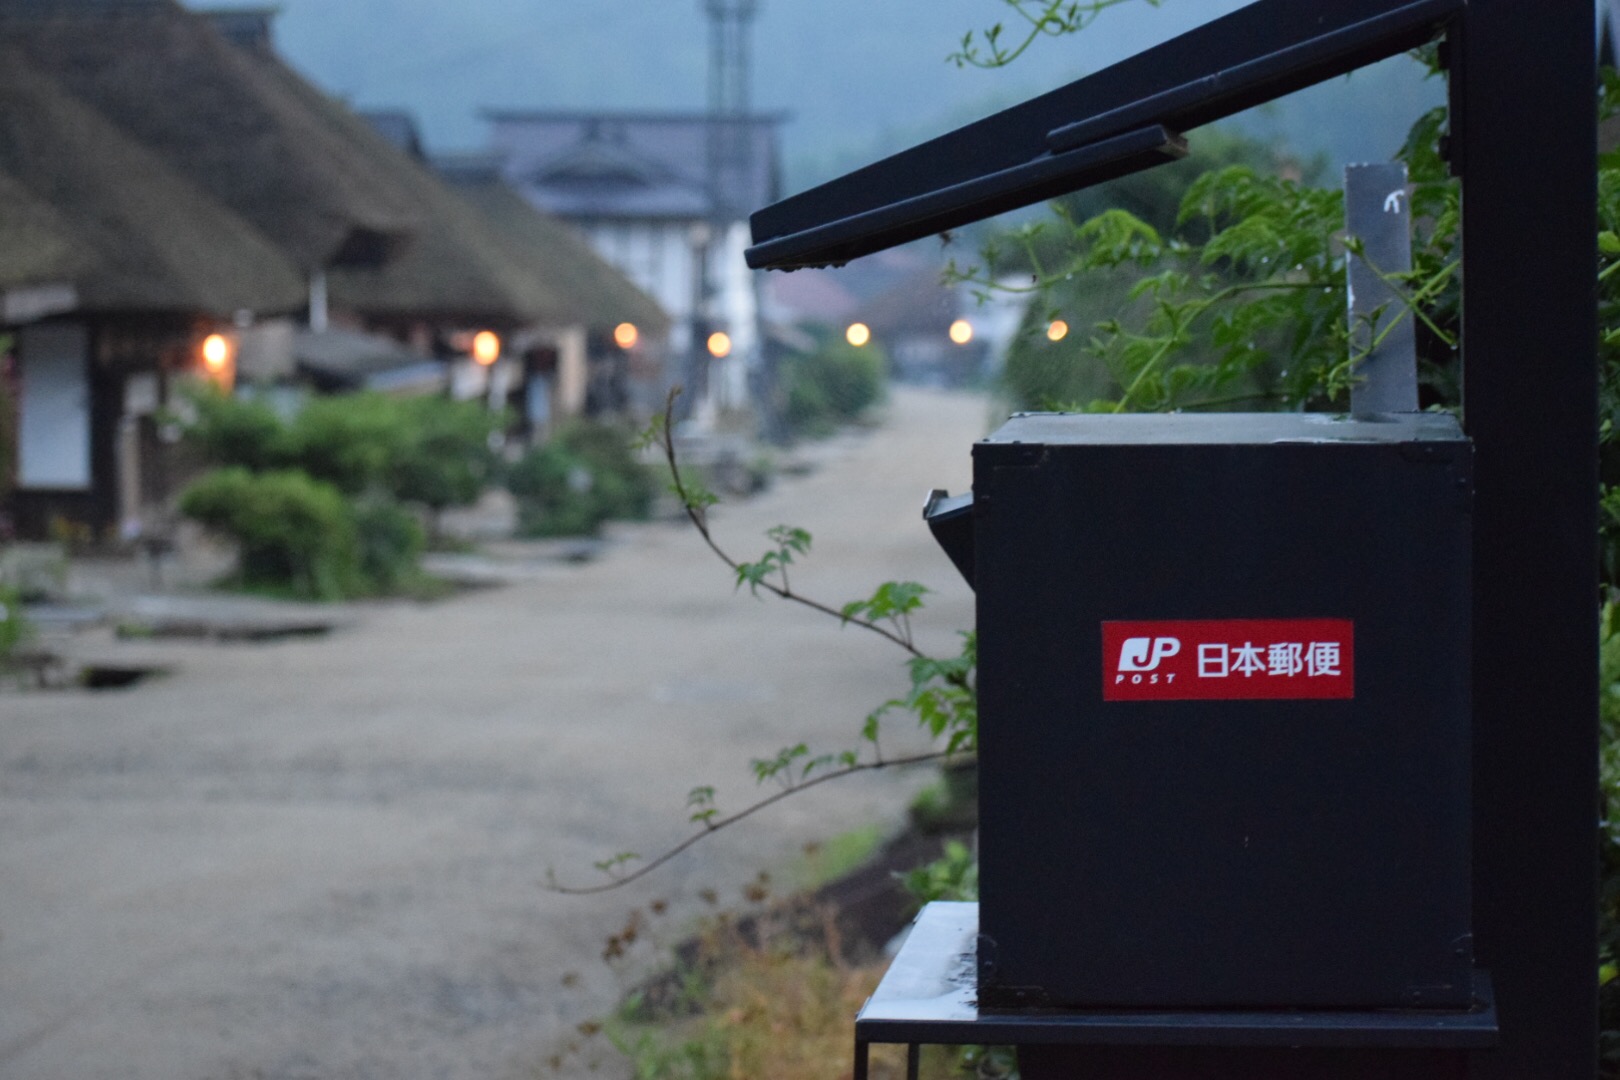 たまやは、会津の山奥、茅葺き屋根の立ち並ぶ、大内宿にございます。